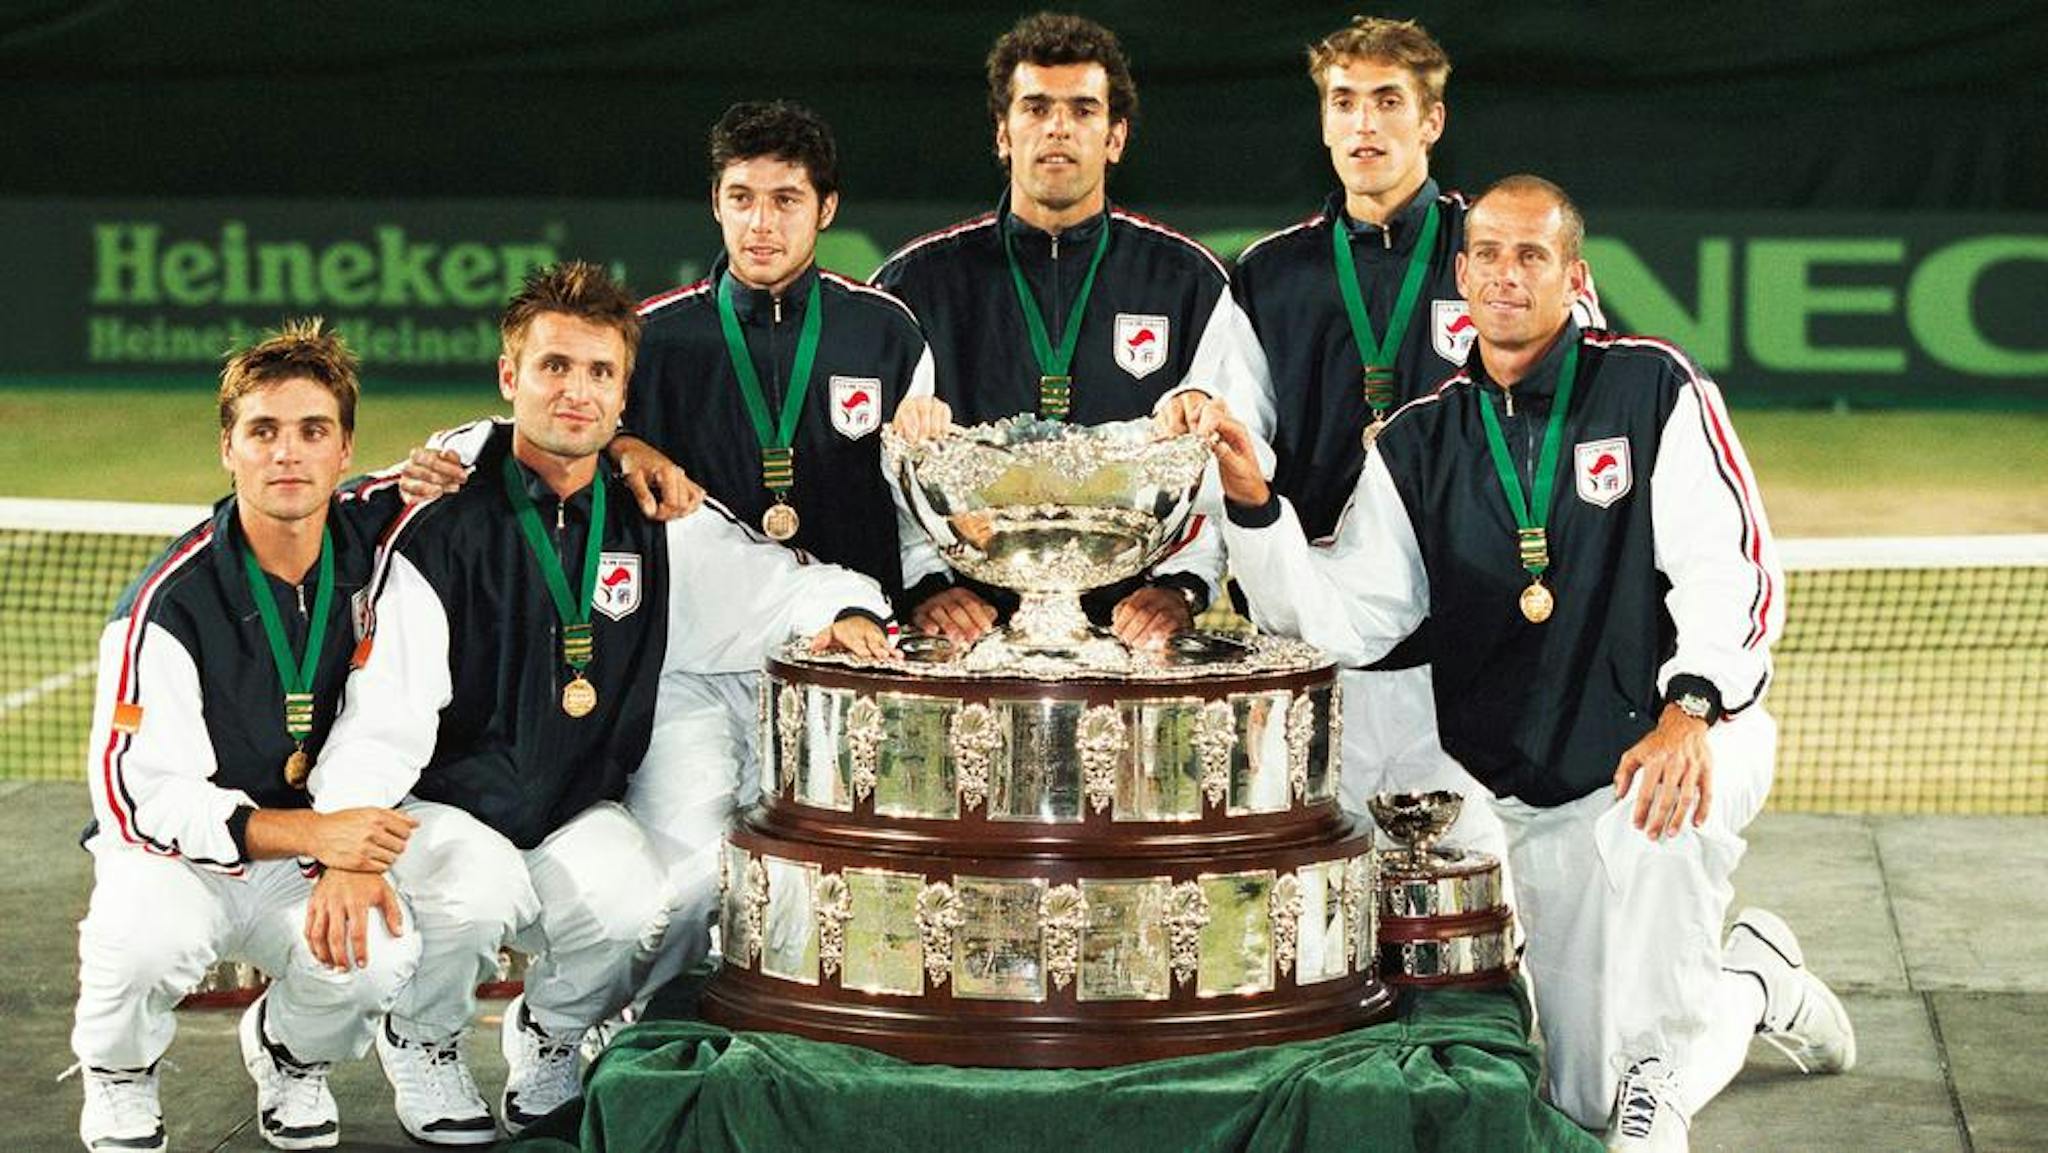 Vainqueur de la Coupe Davis en 2001, aux côtés d'Arnaud Clément, Fabrice Santoro, Sébastien Grosjean, Cédric Pioline et du capitaine Guy Forget.